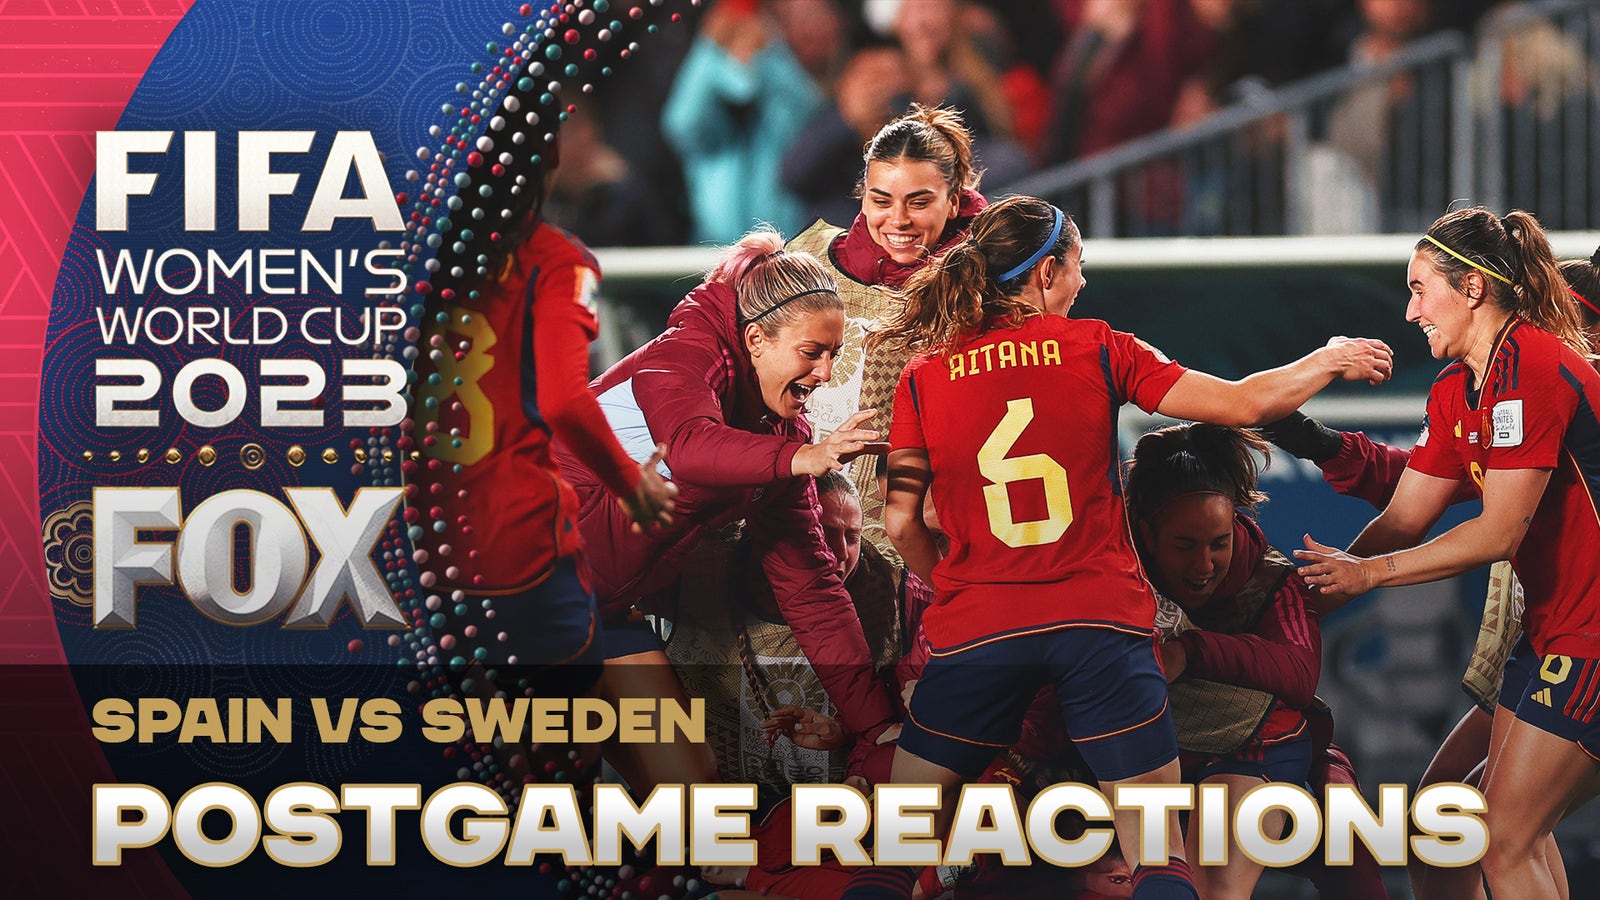 En un giro cruel, España venció a Suecia en su propio partido para llegar a la final de la Copa del Mundo.